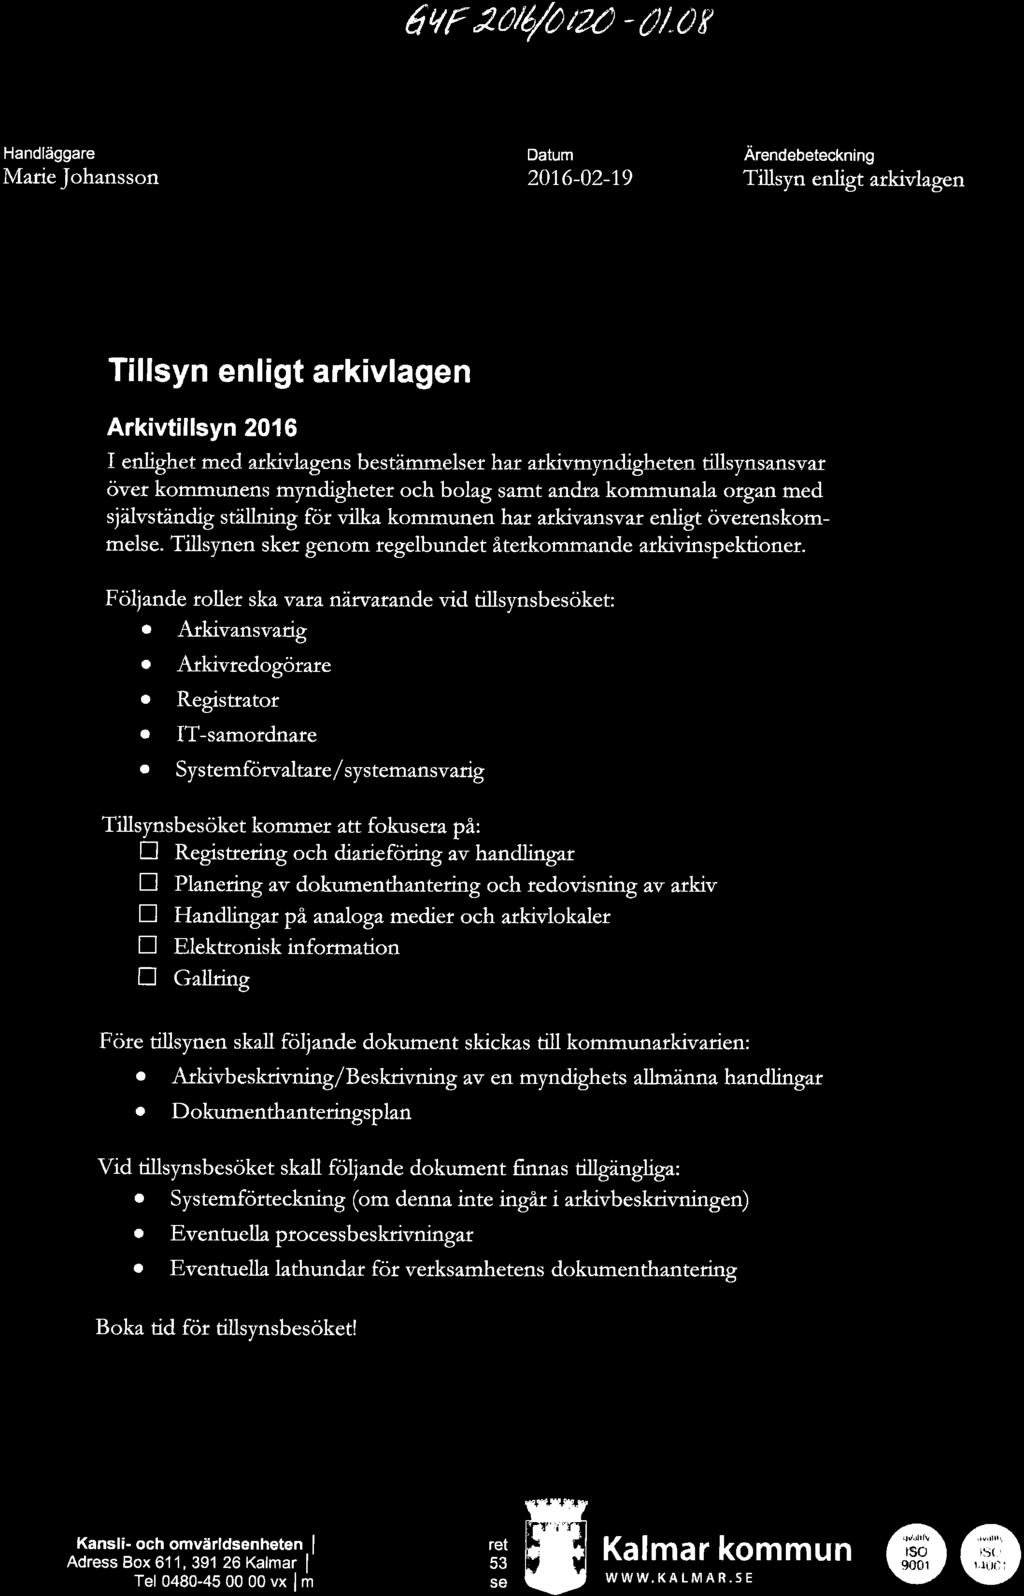 6ur ruø/oüa - U"or Handläggare MarieJohansson Datum 201.6-02-19 Arendebeteckning Tillsyn enligt arkivlagen Tillsyn enligt arkivlagen ) Arkivtillsyn 2016 I enlighet med arki-'.